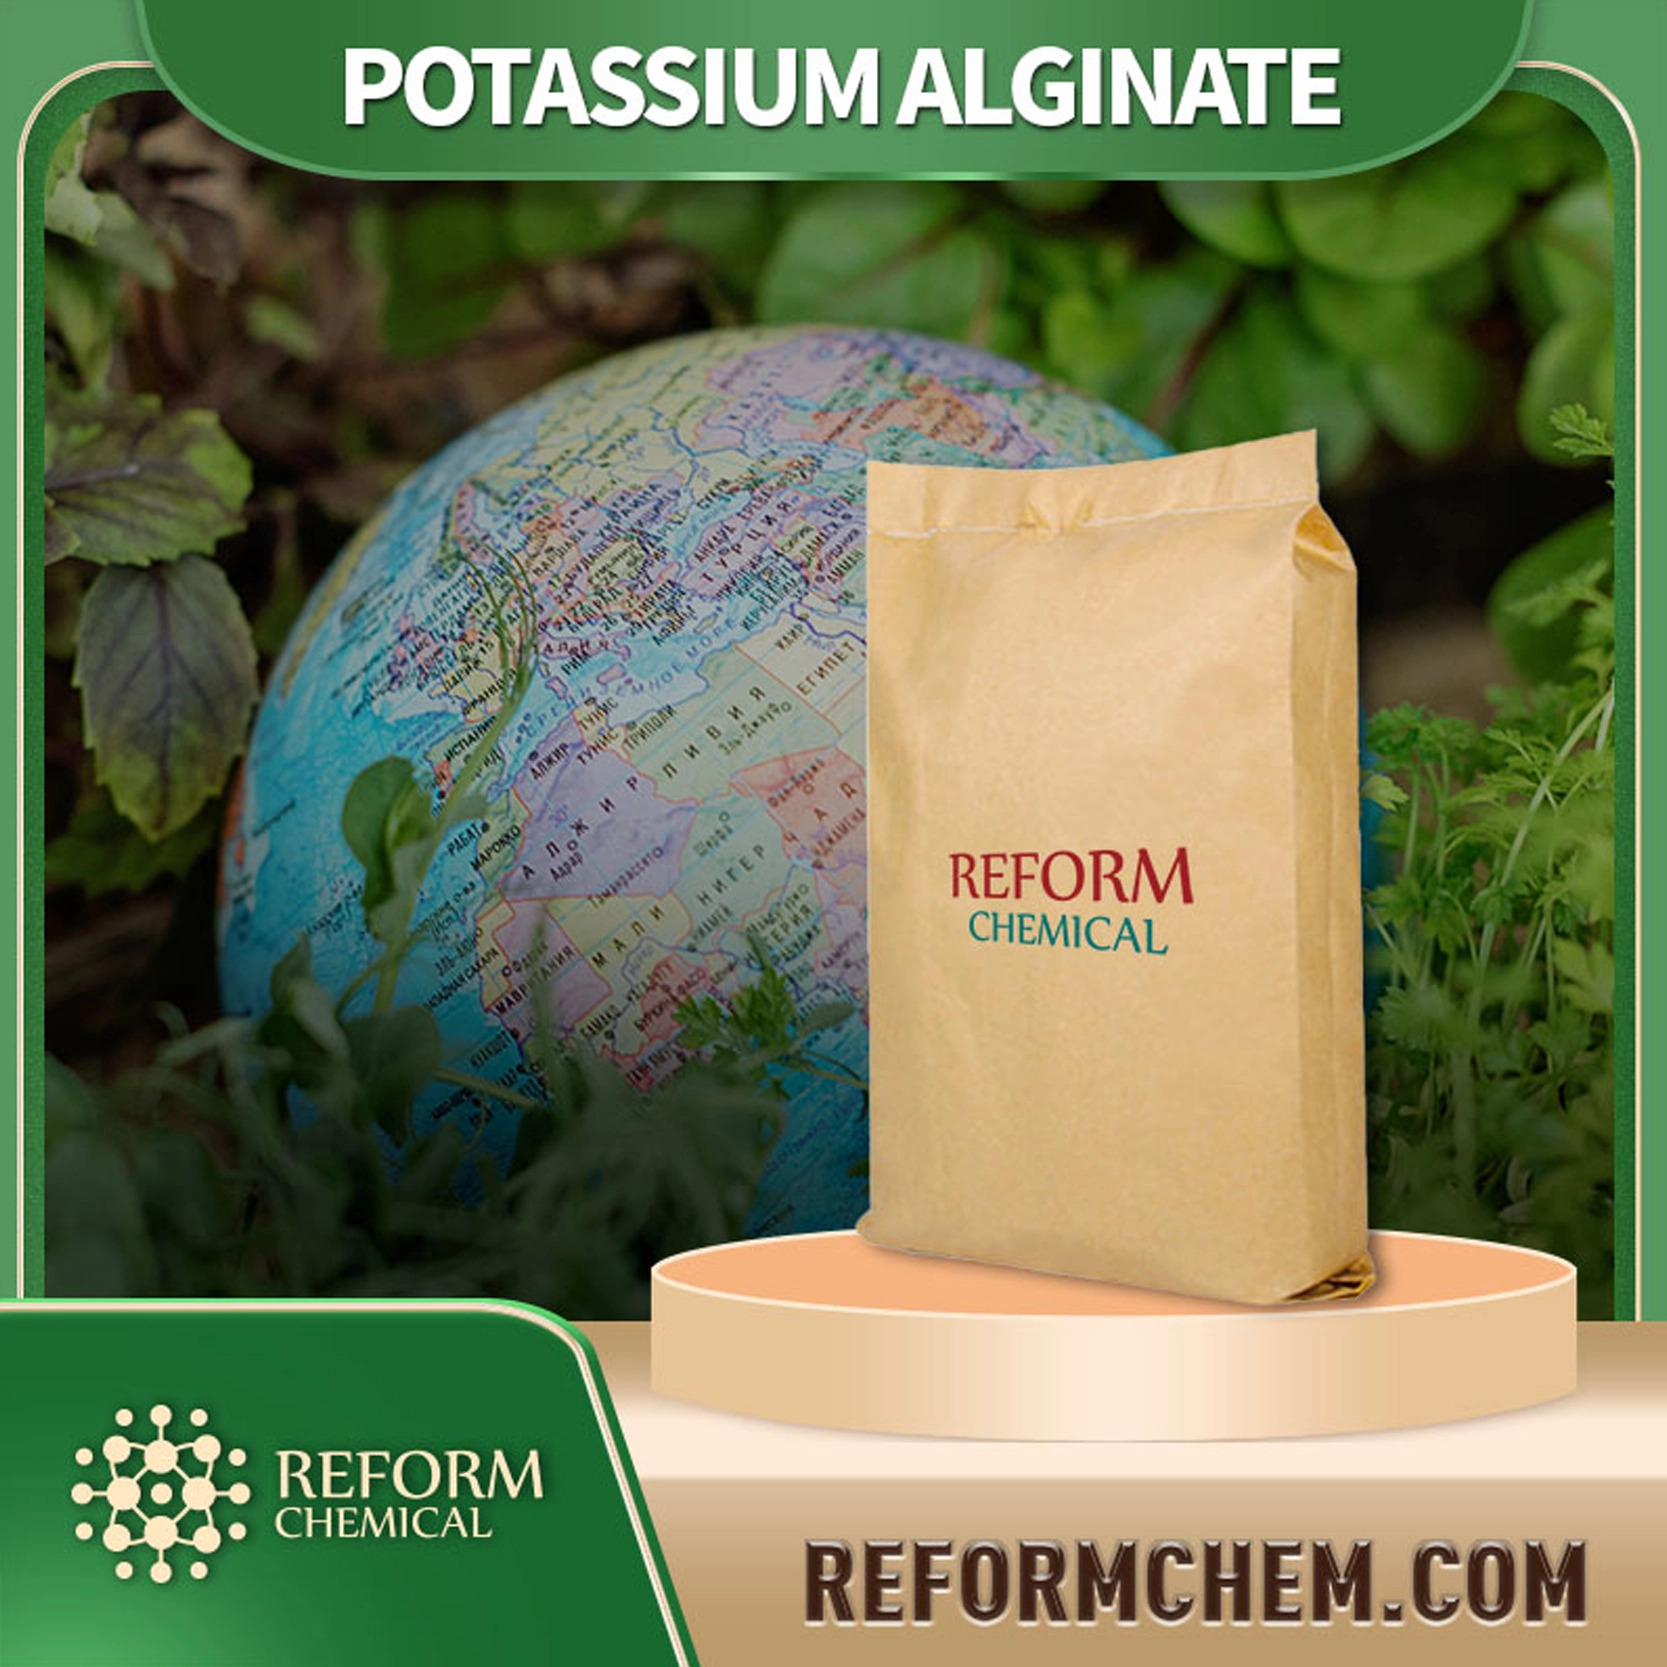 Potassium alginate